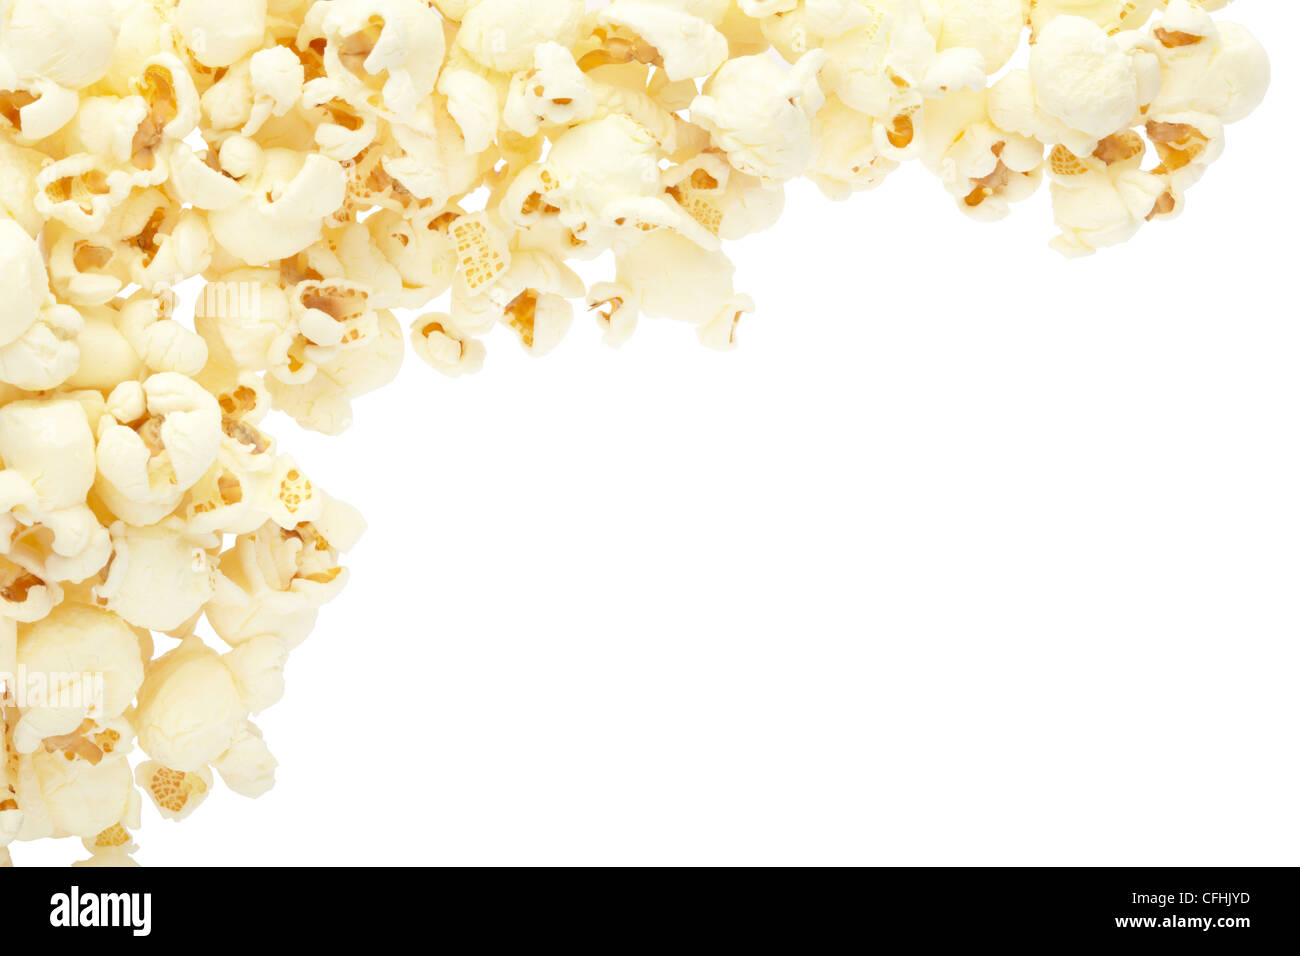 Popcorn frame Stock Photo